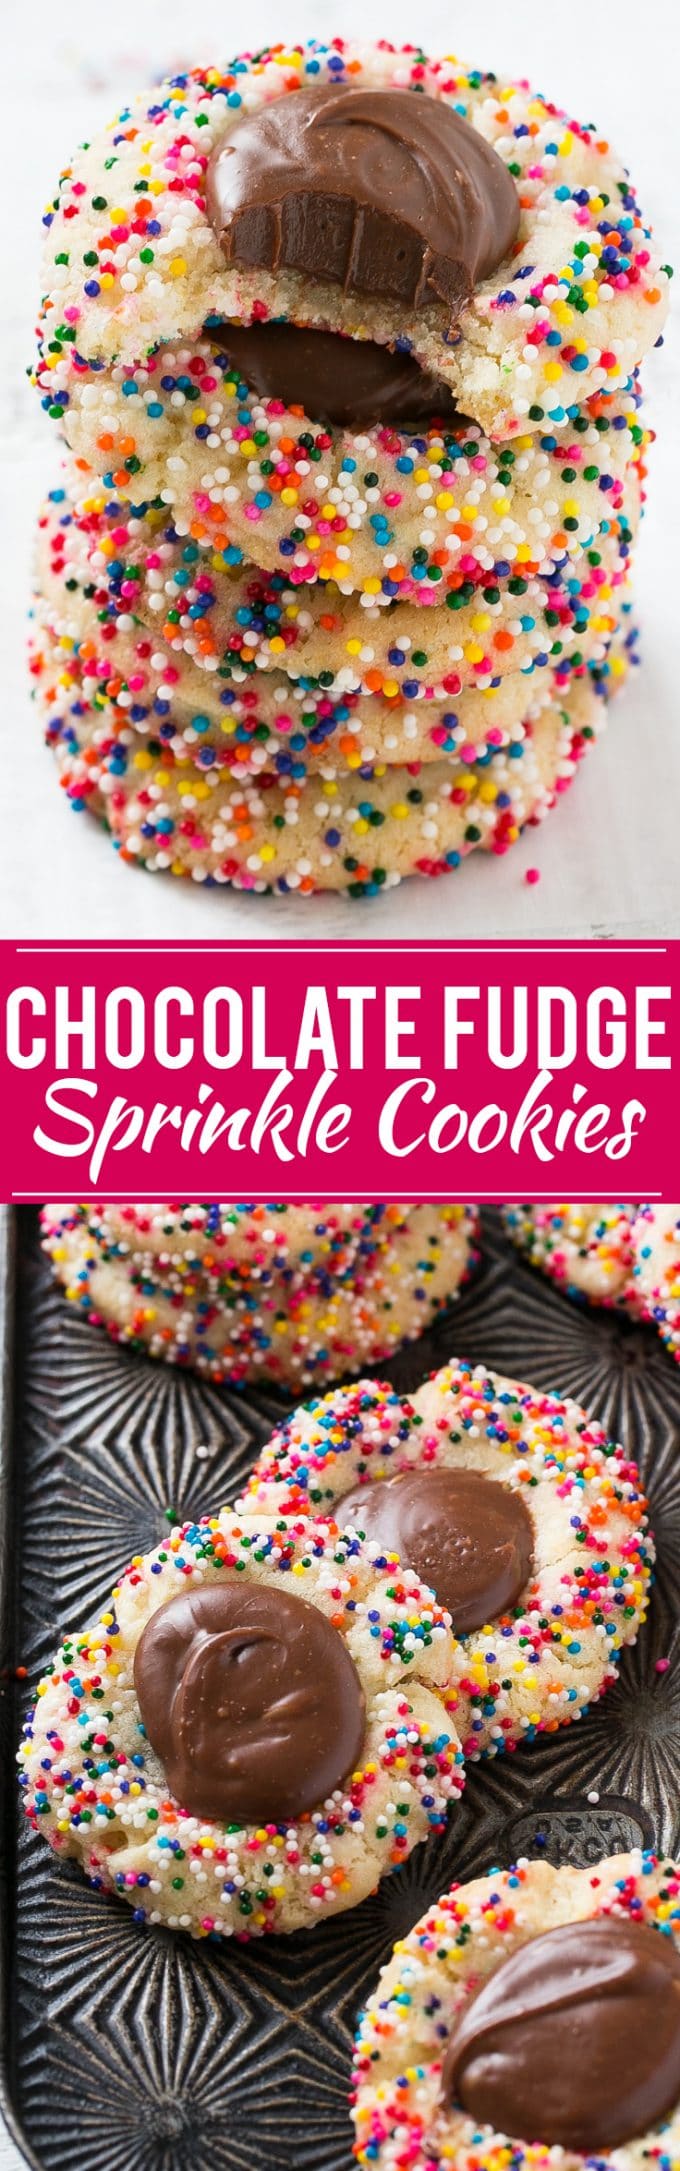 Chocolate Fudge Cookies Recipe | Sprinkle Cookies | Holiday Cookies | Fudge Cookies #cookies #chocolate #sprinkles #dessert #baking #dinneratthezoo